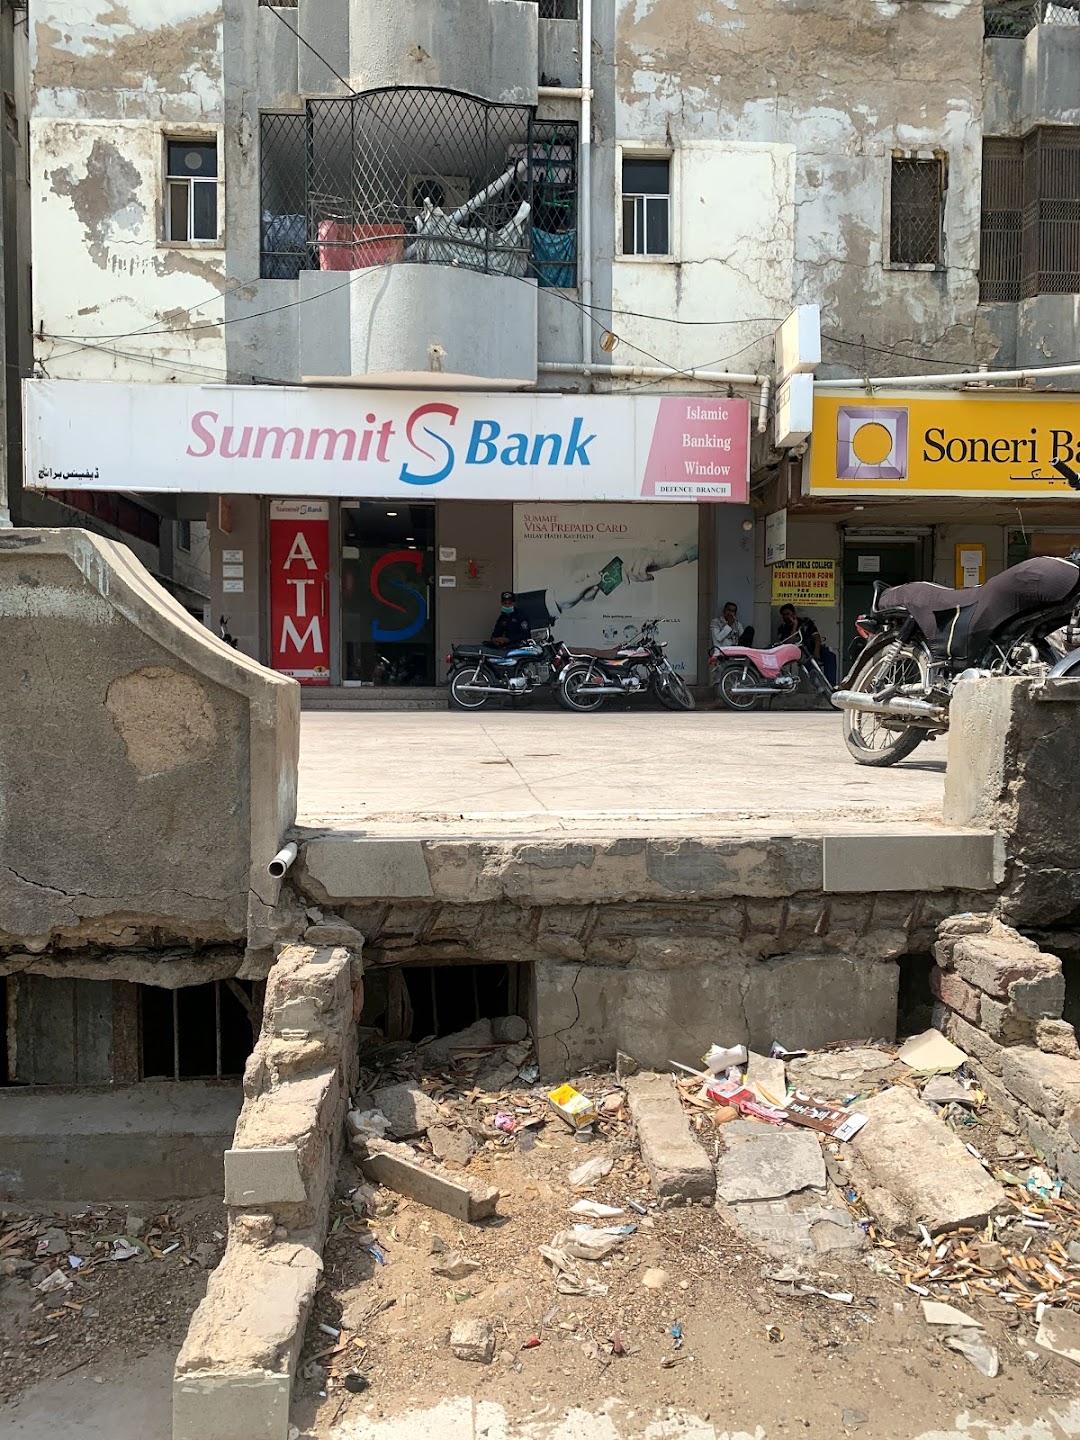 Summit Bank Ltd